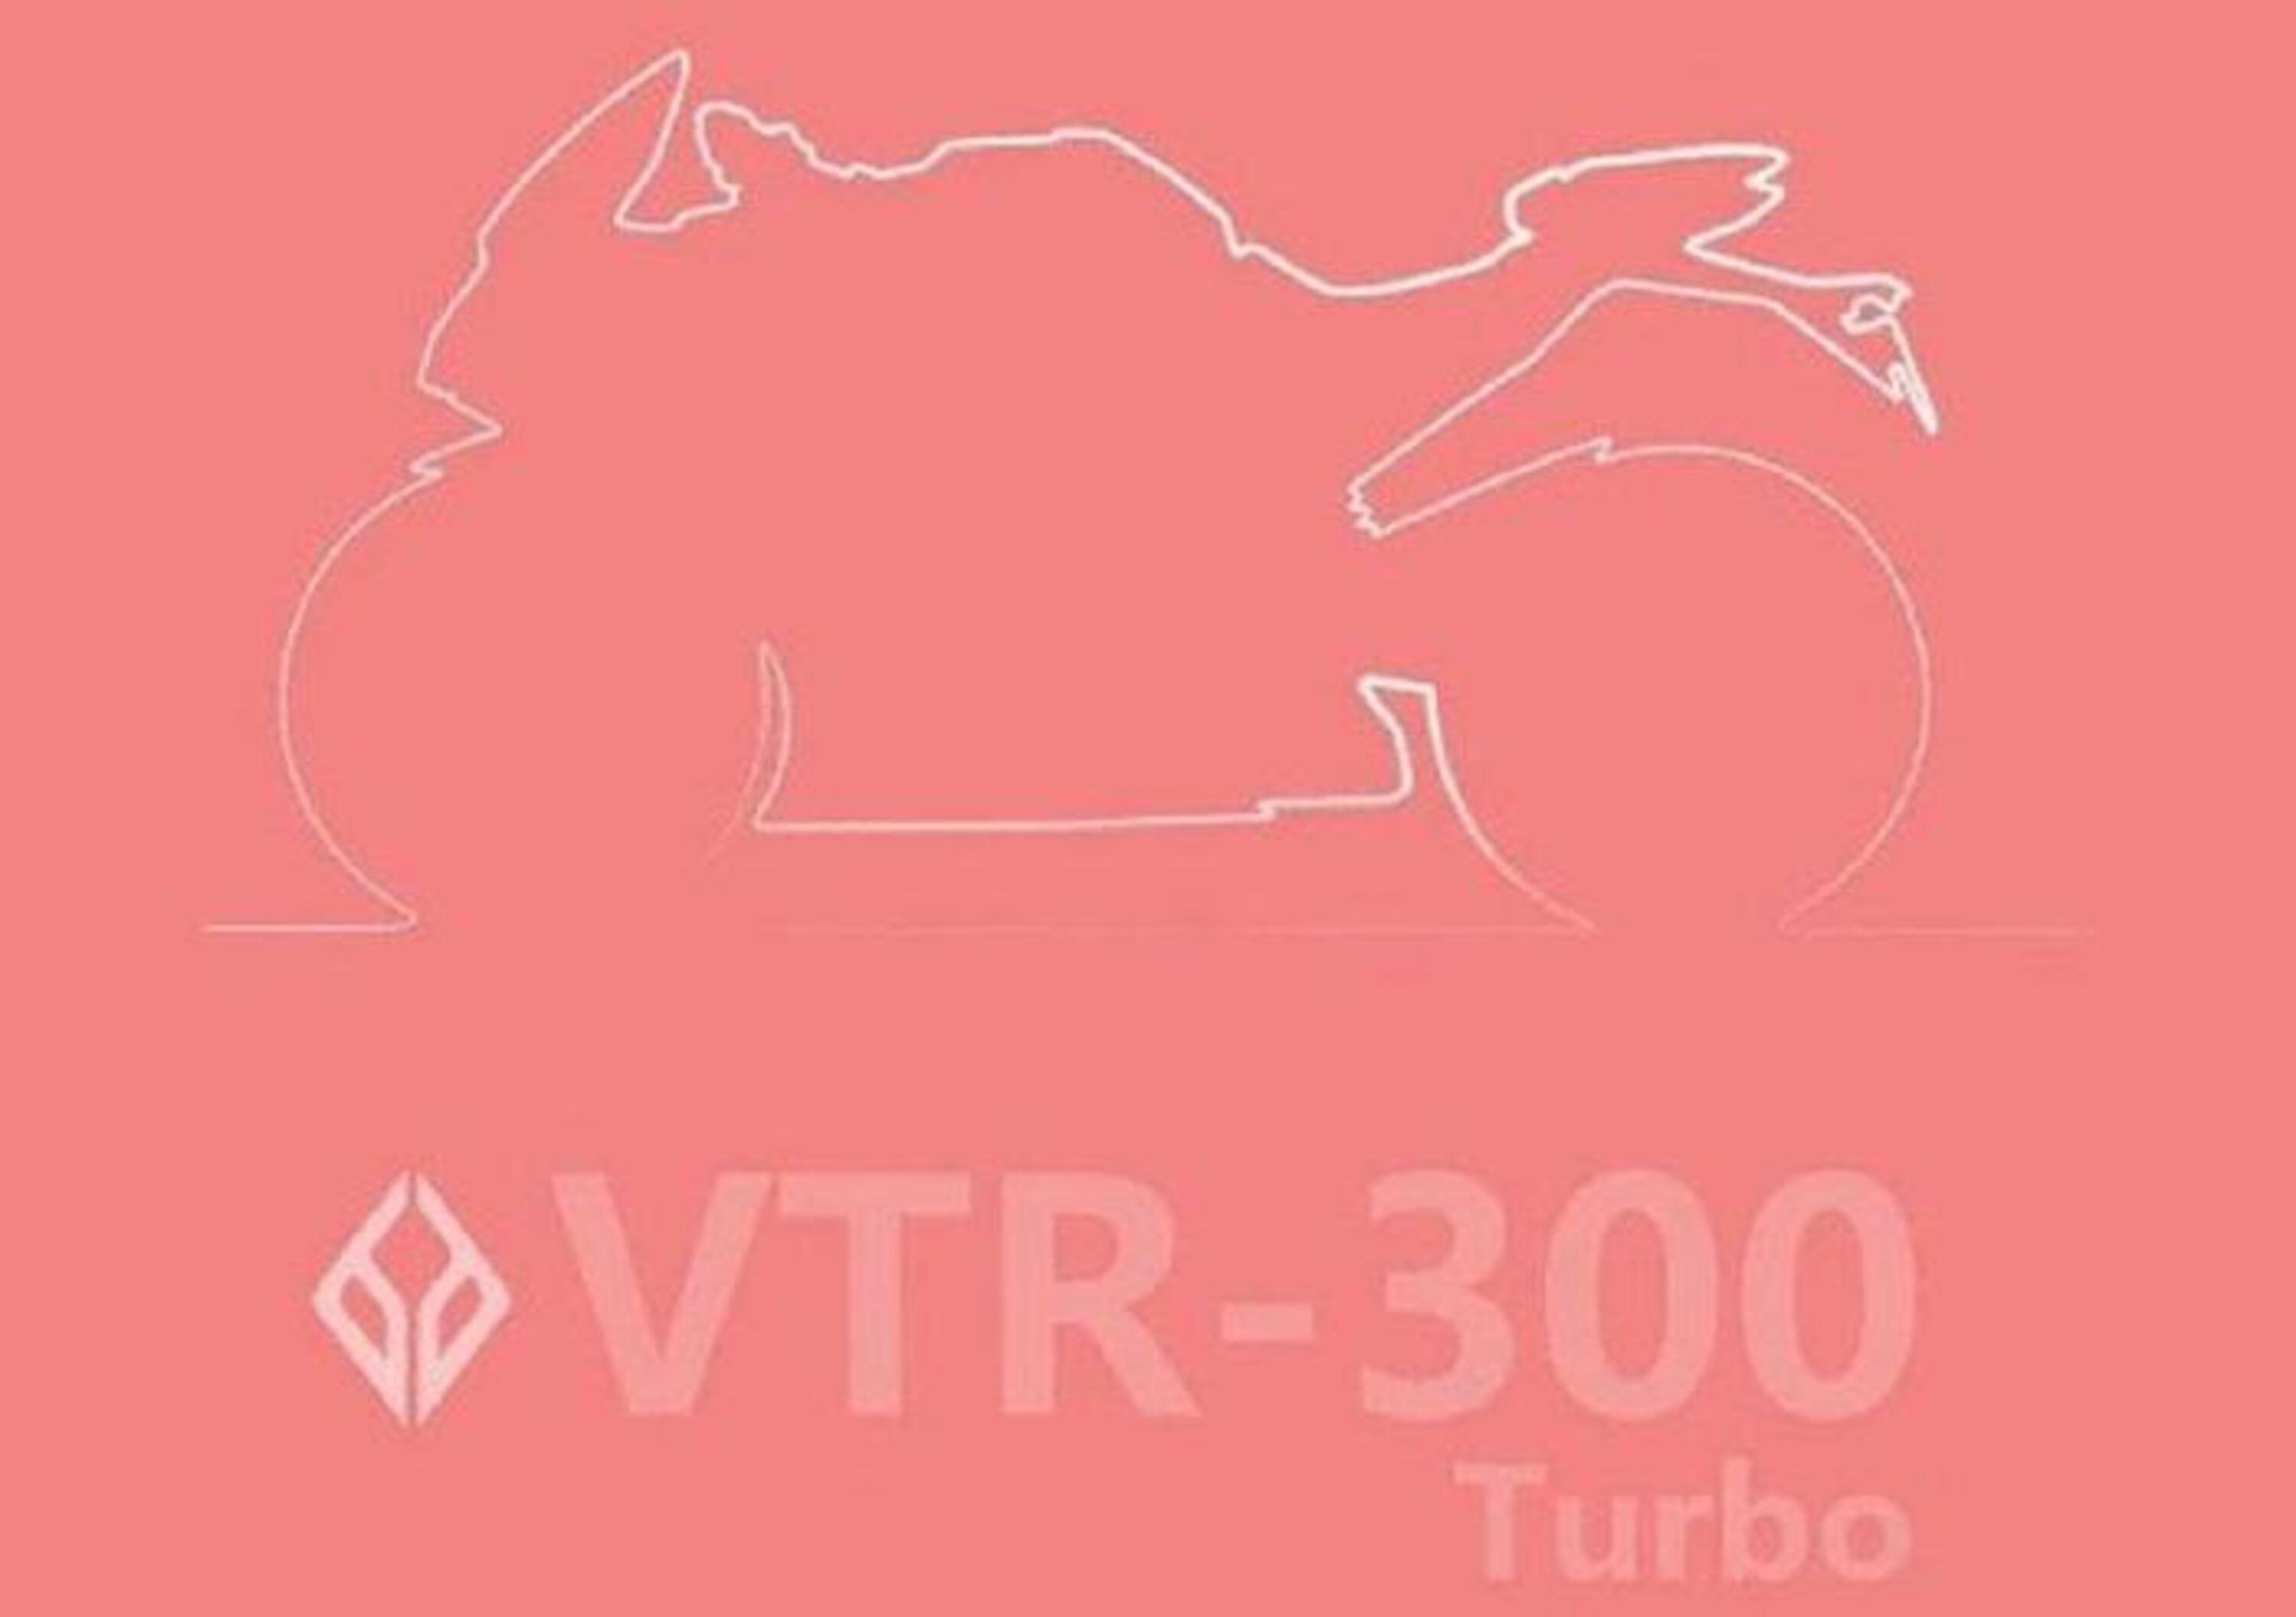 Benda VTR 300 turbo: SSP sovralimentata